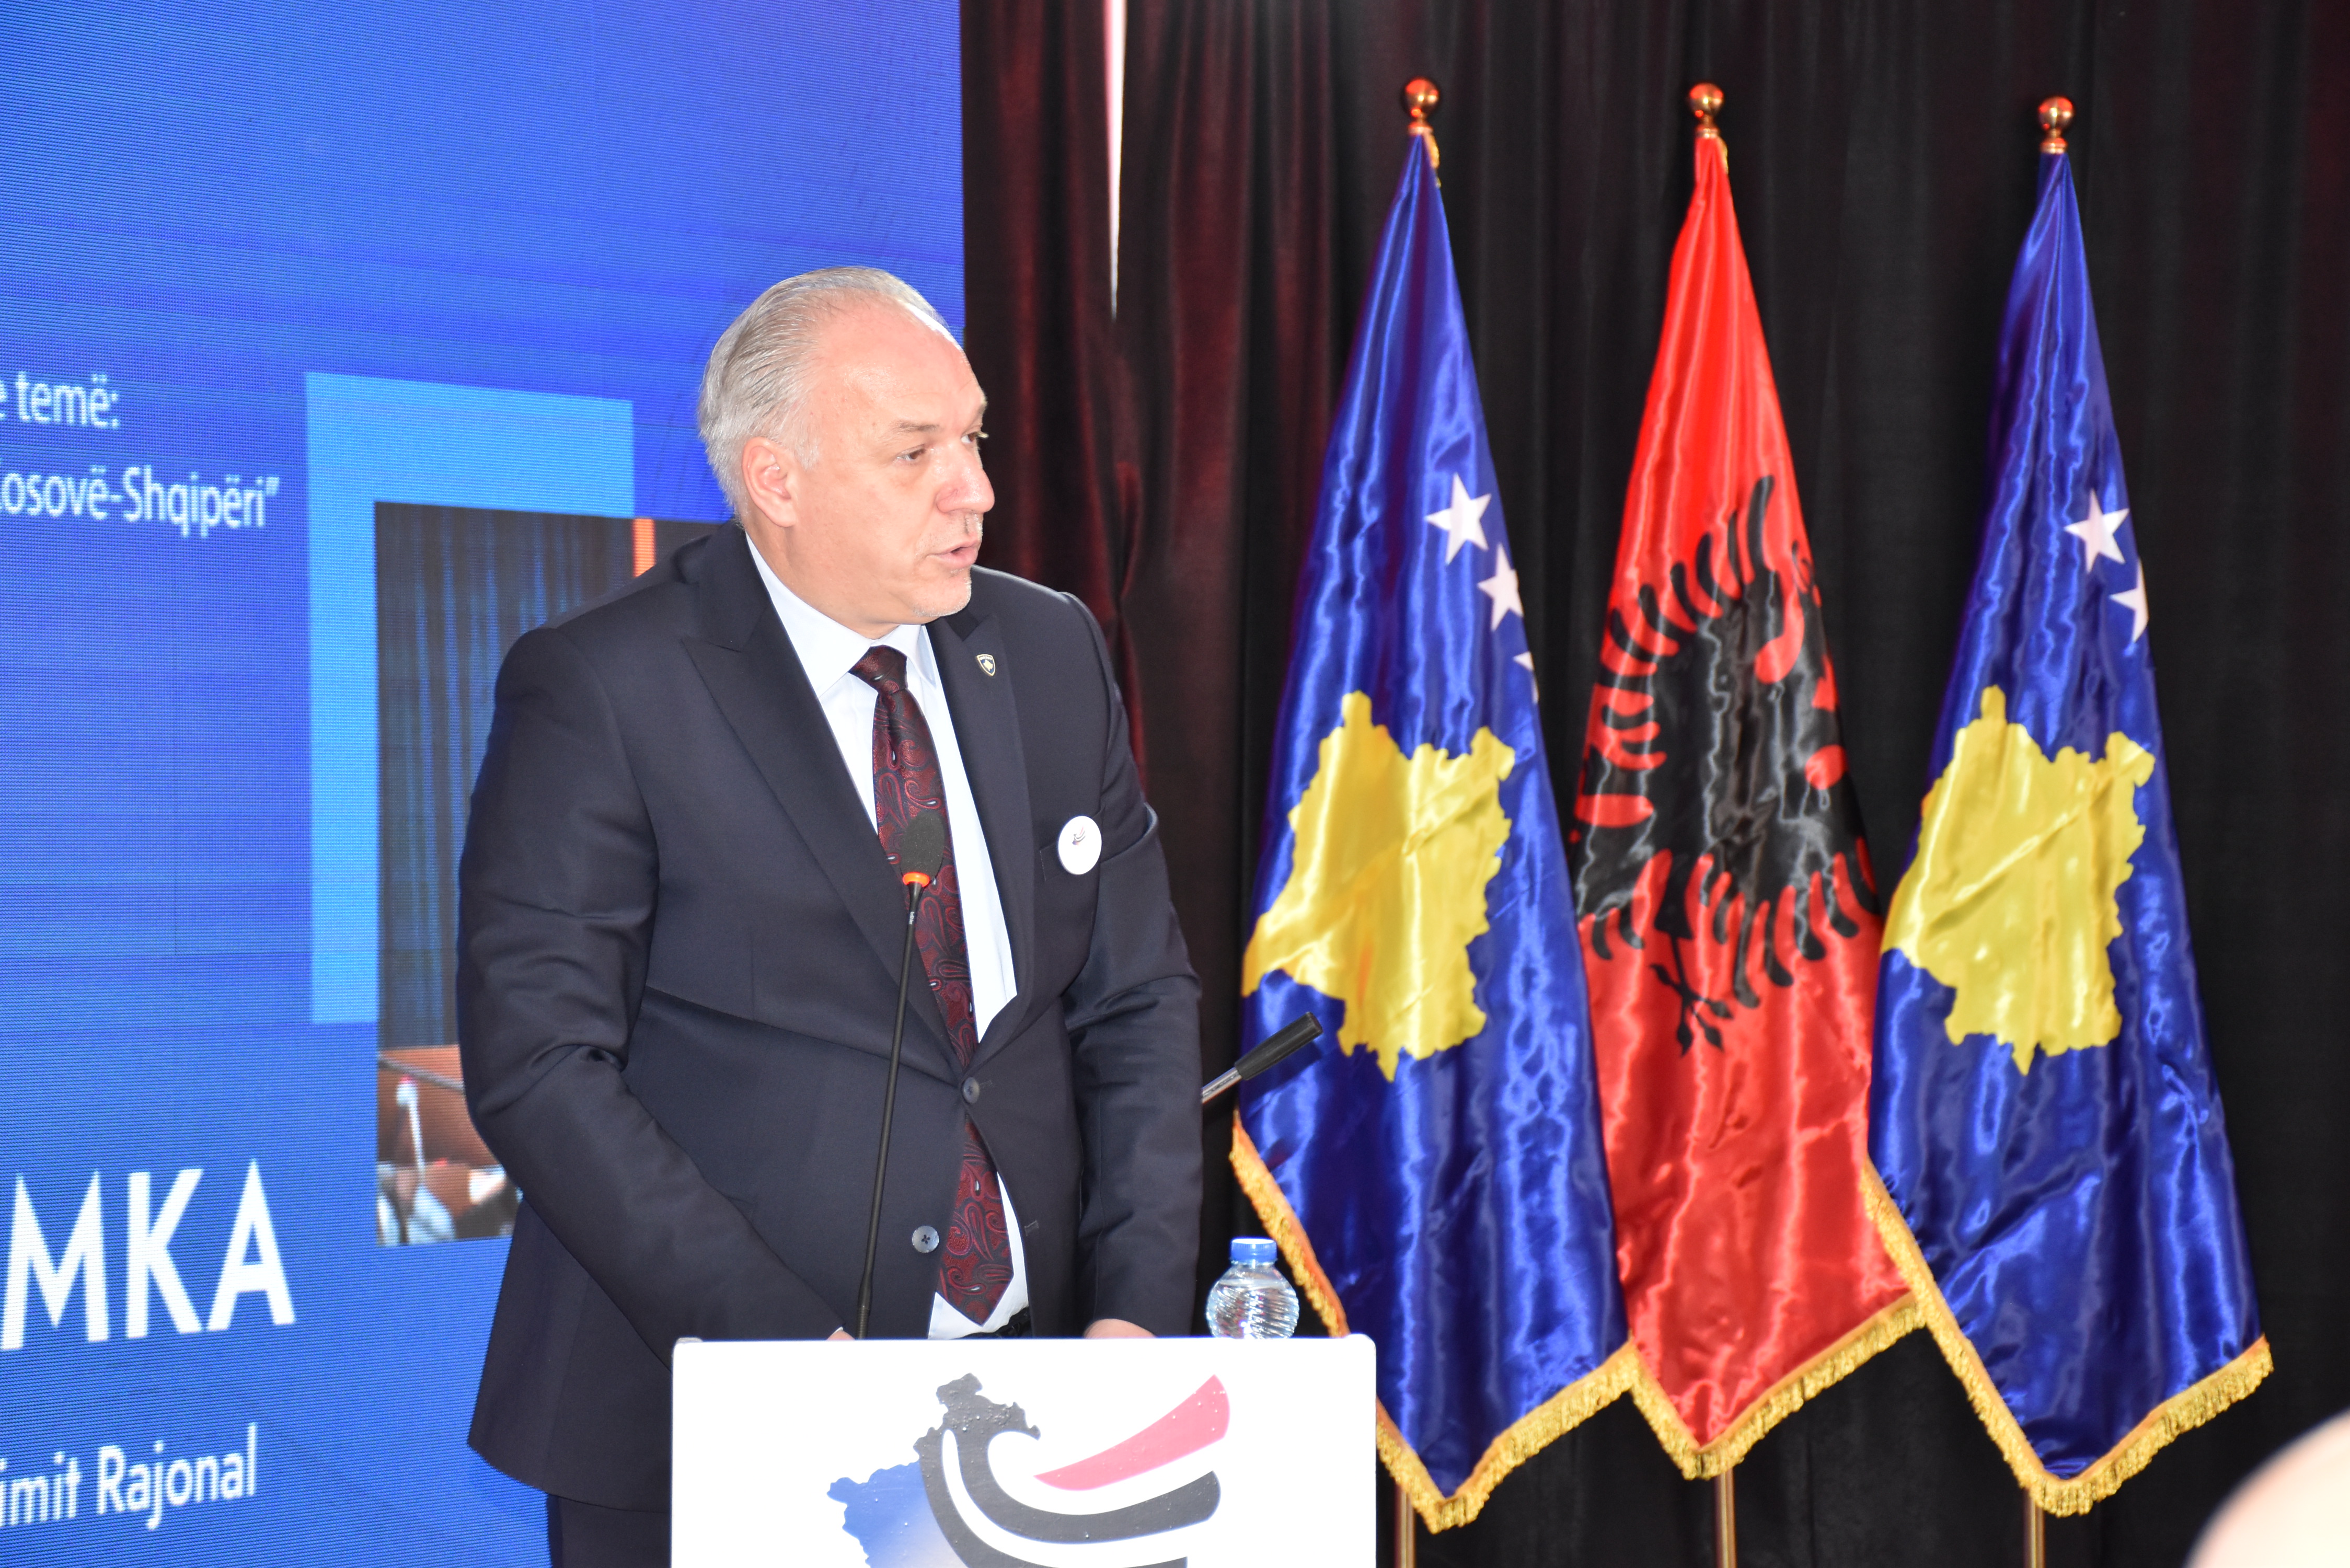 Ministria e Zhvillimit Rajonal (MZHR) realizon Forumin për Zhvillim Rajonal Kosovë-Shqipëri